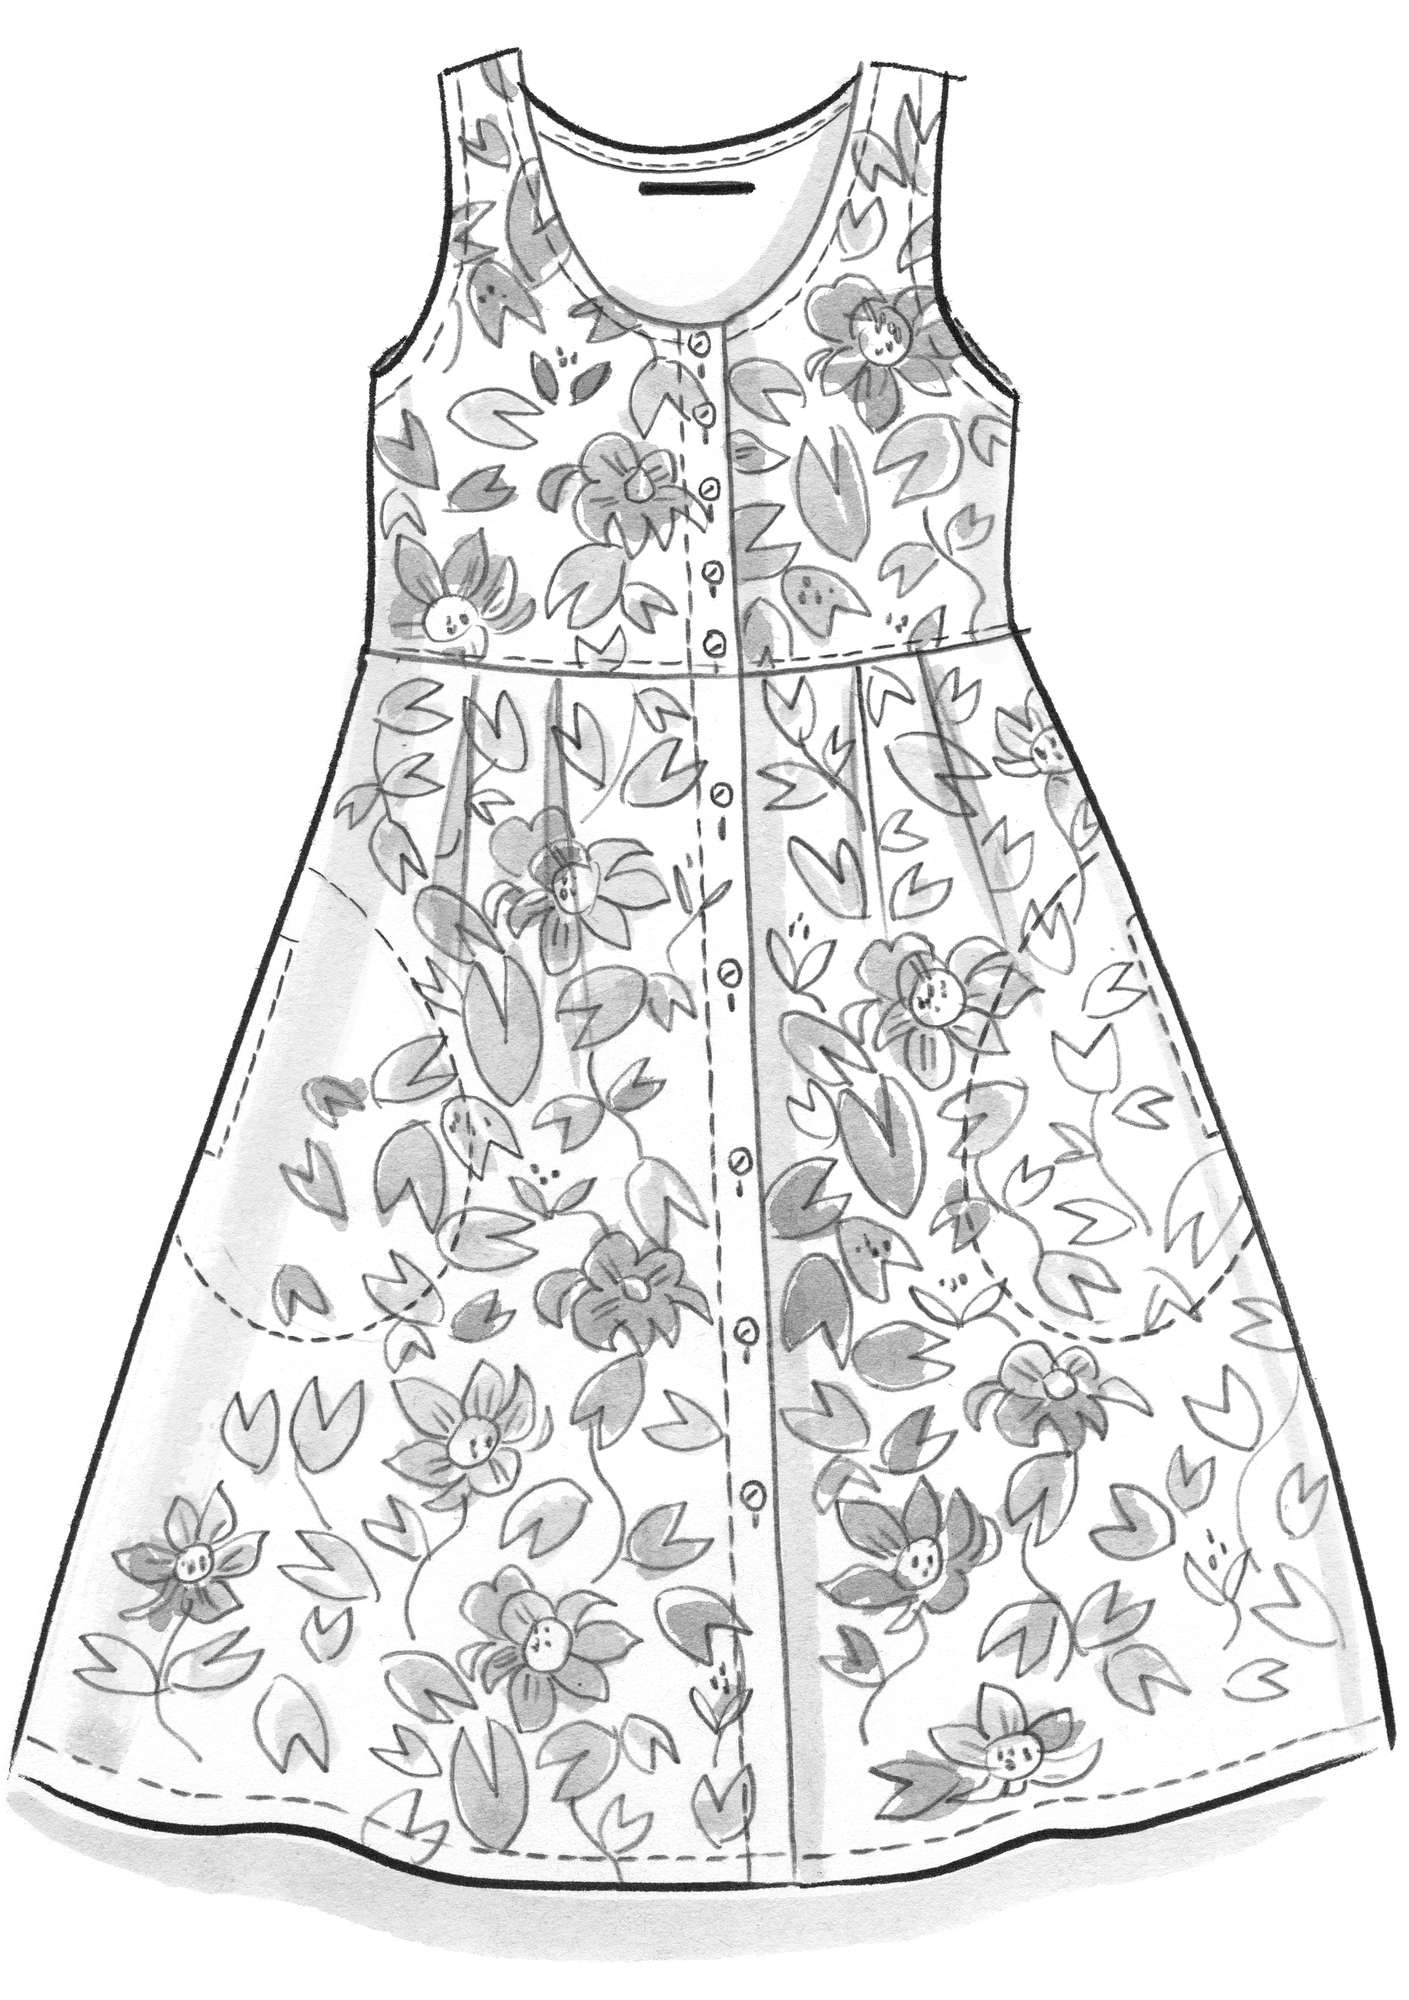 Vevd kjole «Lotus» i økologisk bomull